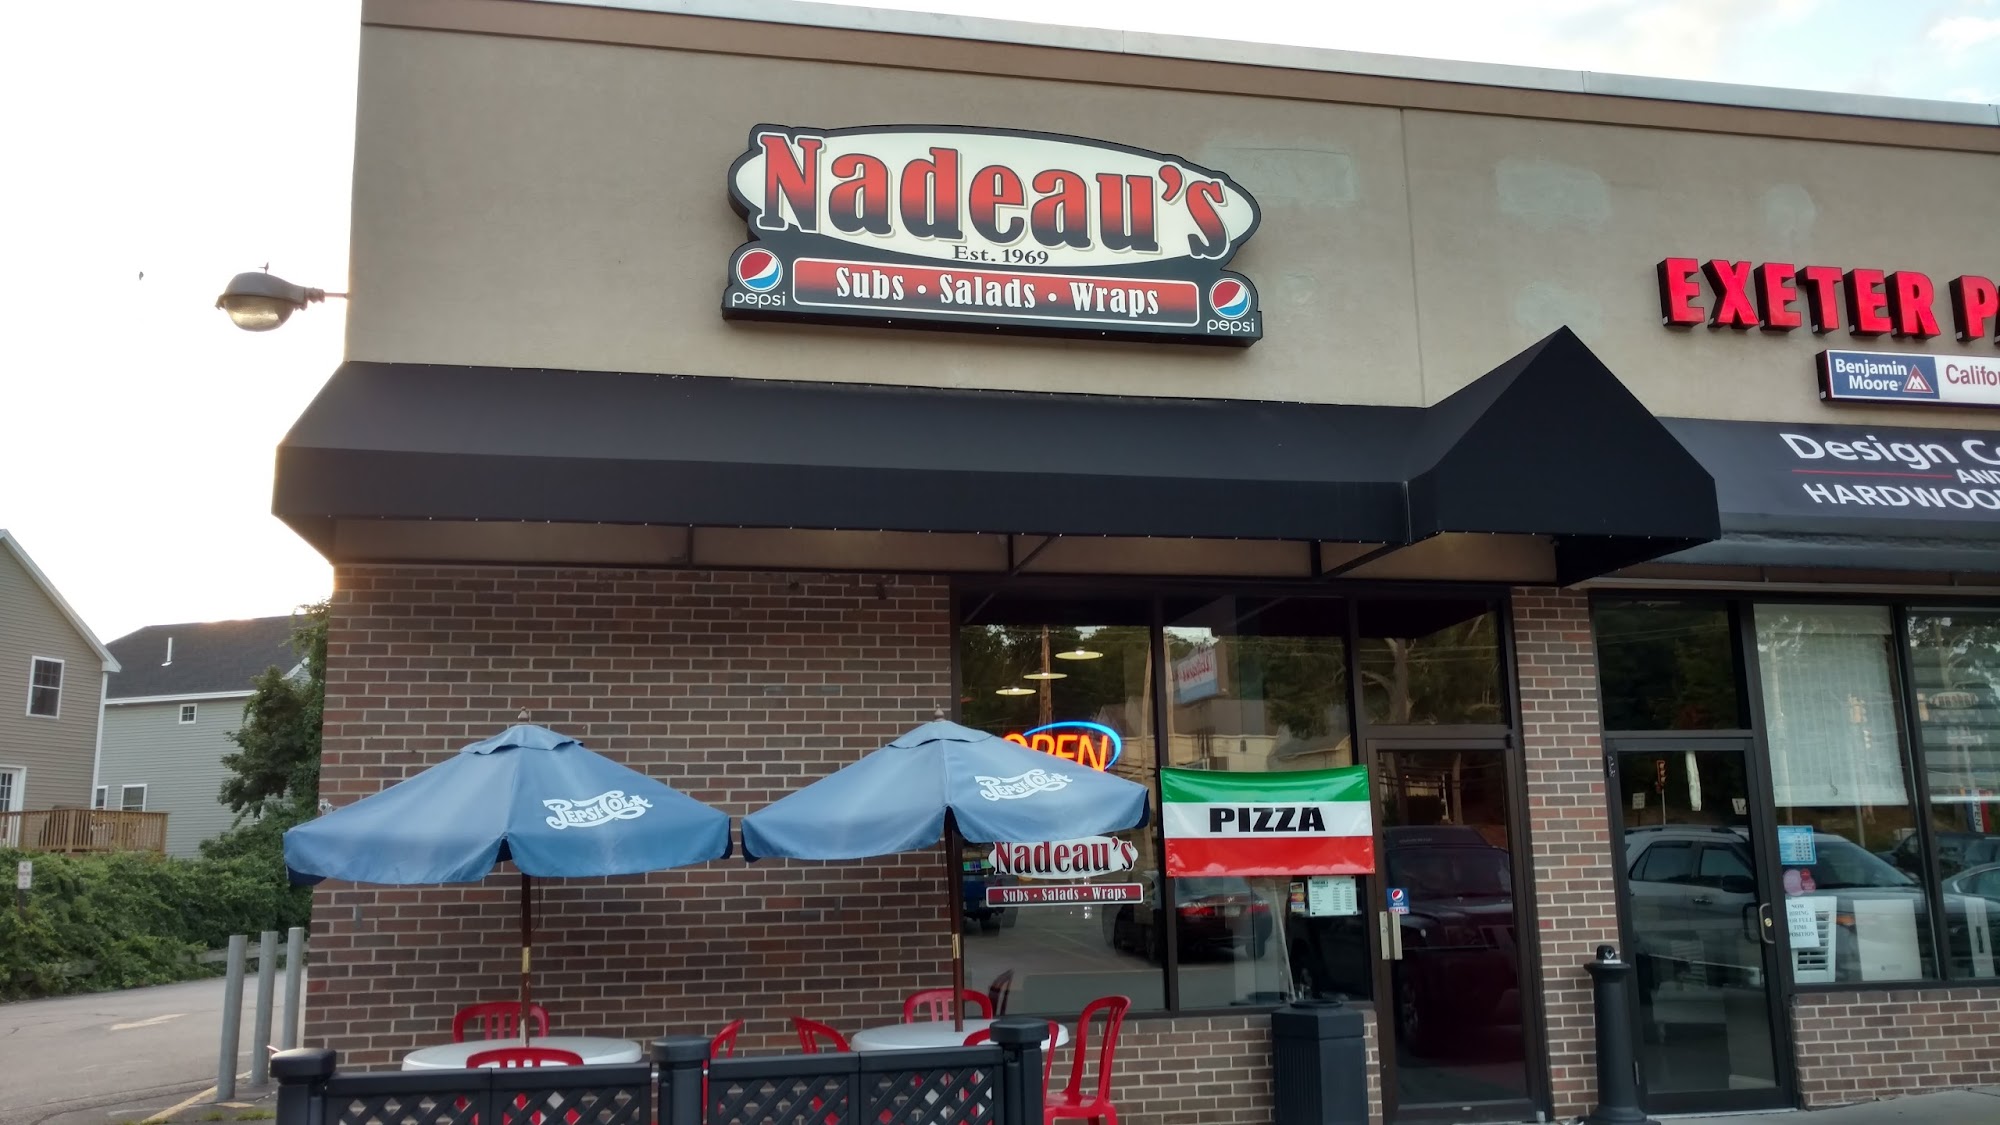 Nadeau's Subs Salads Wraps